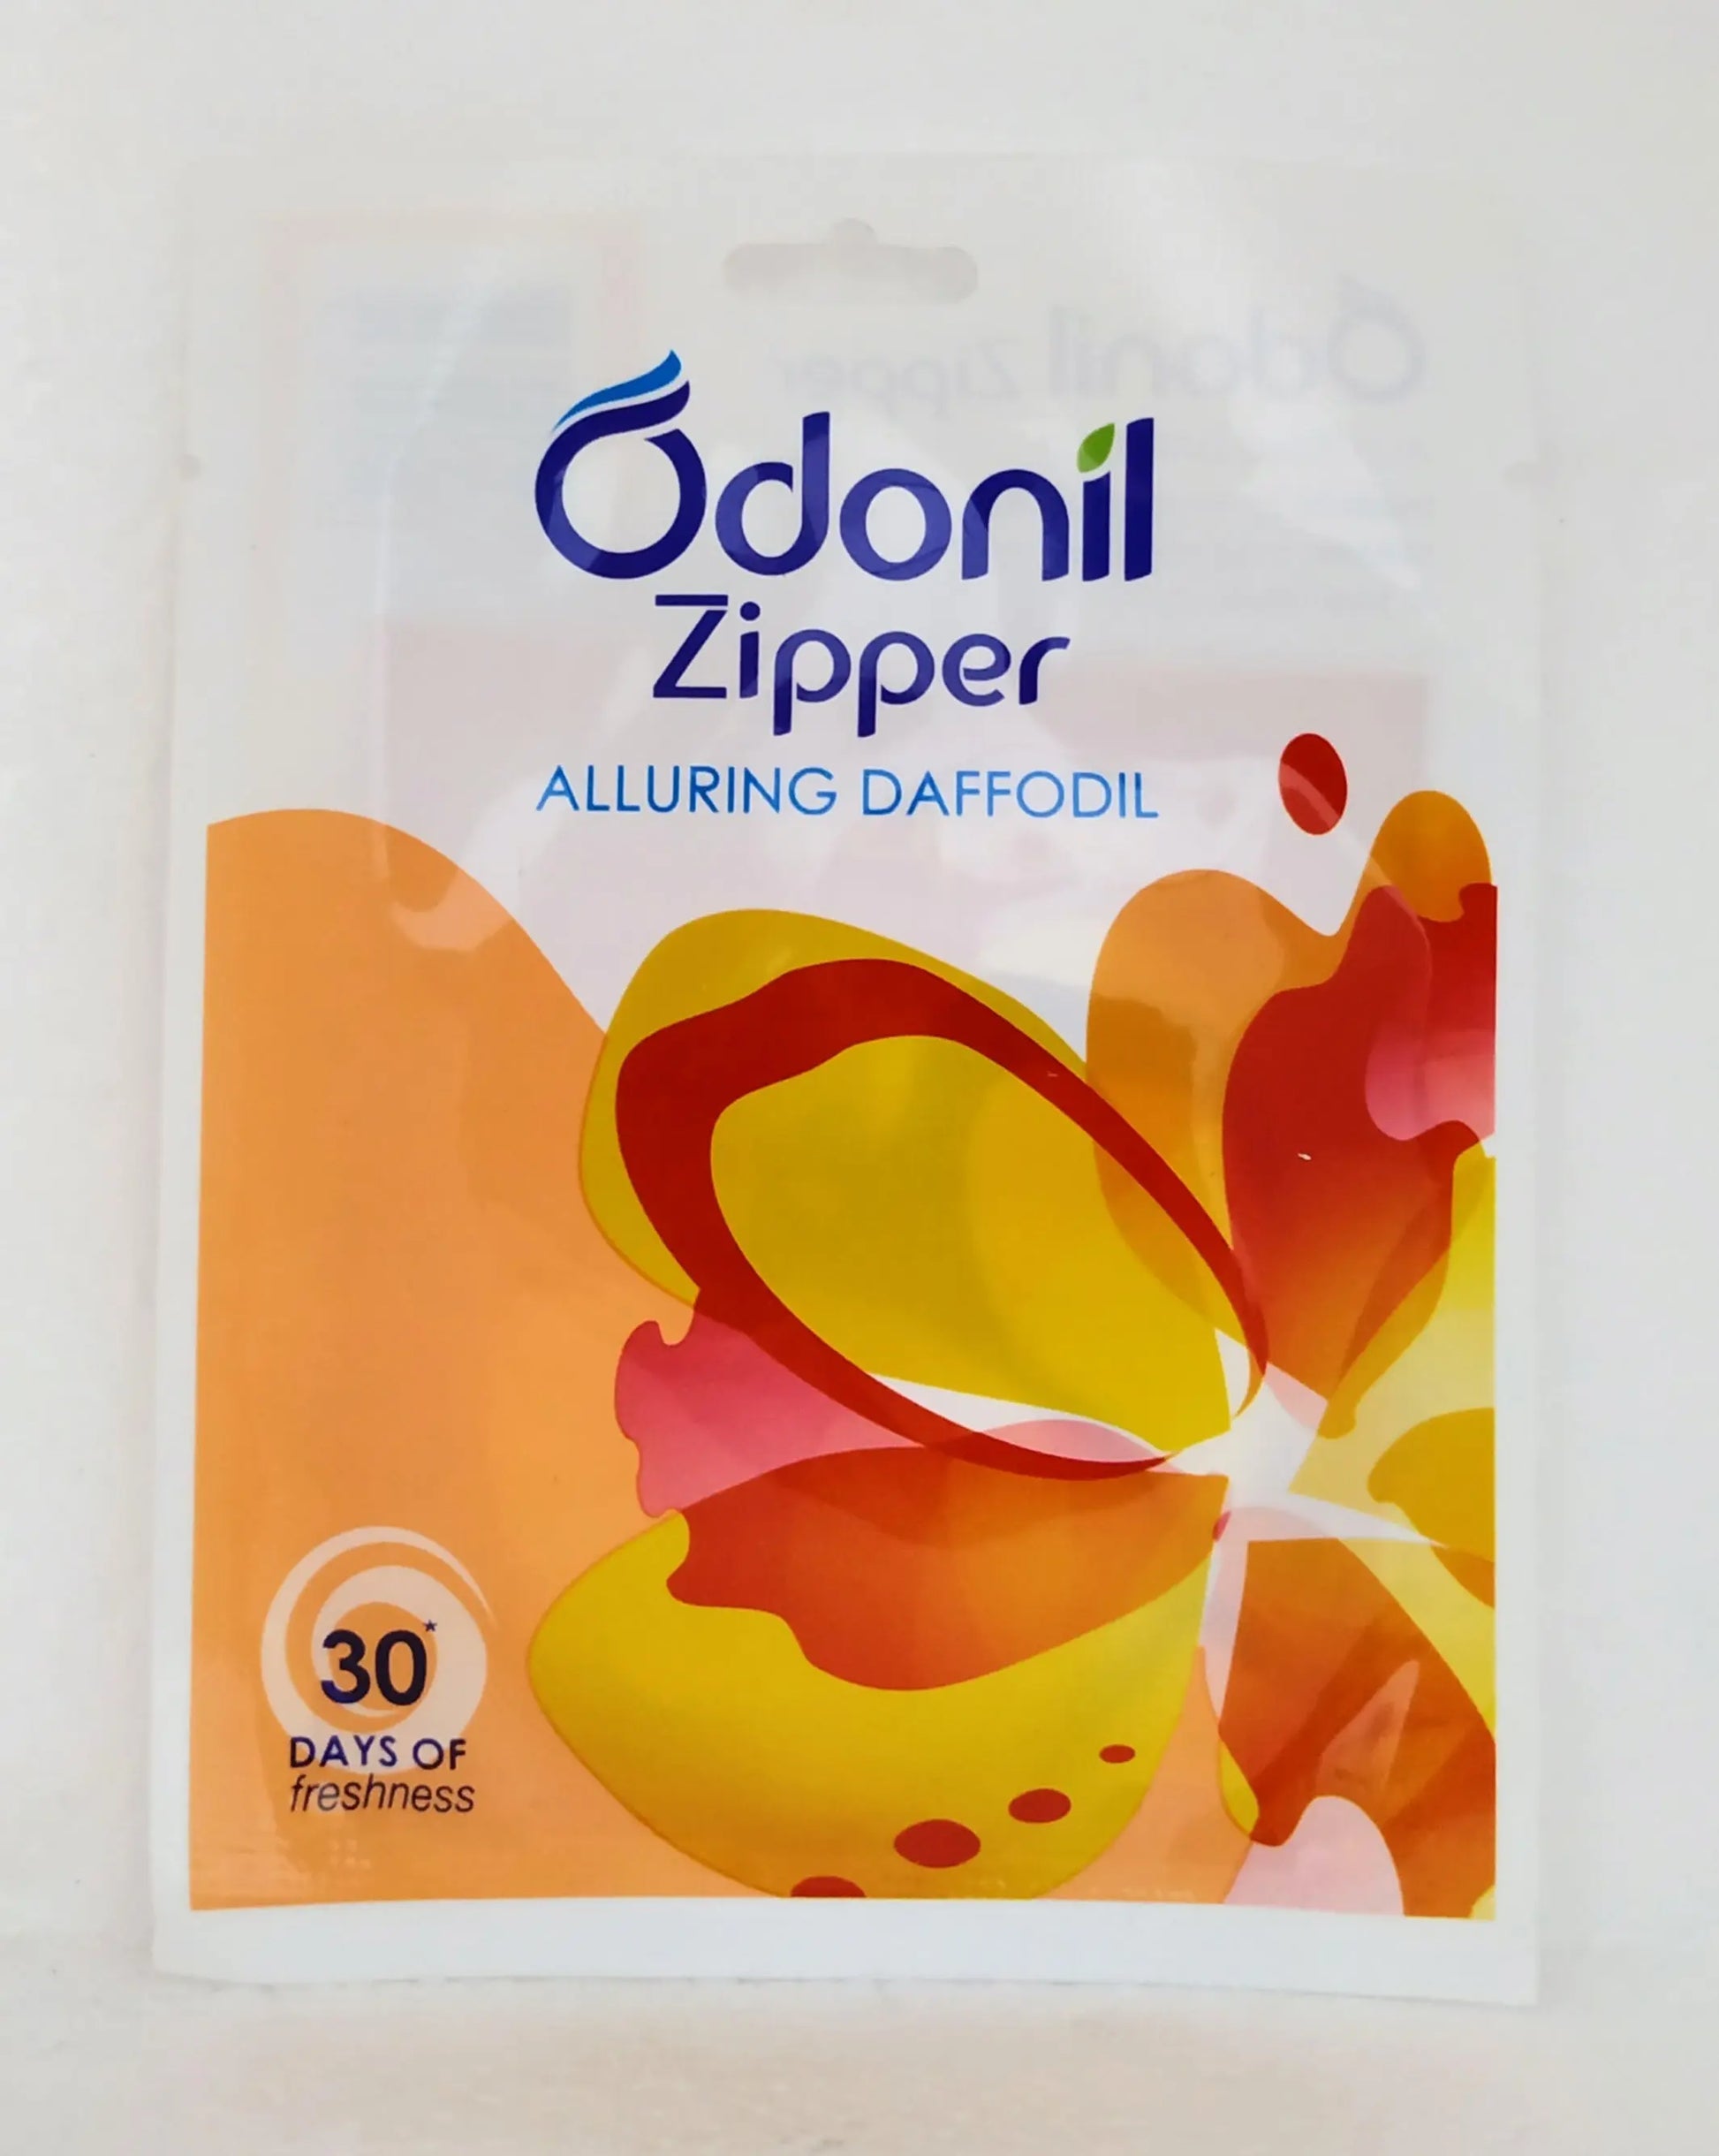 Odonil zipper - Alluring daffodil Dabur